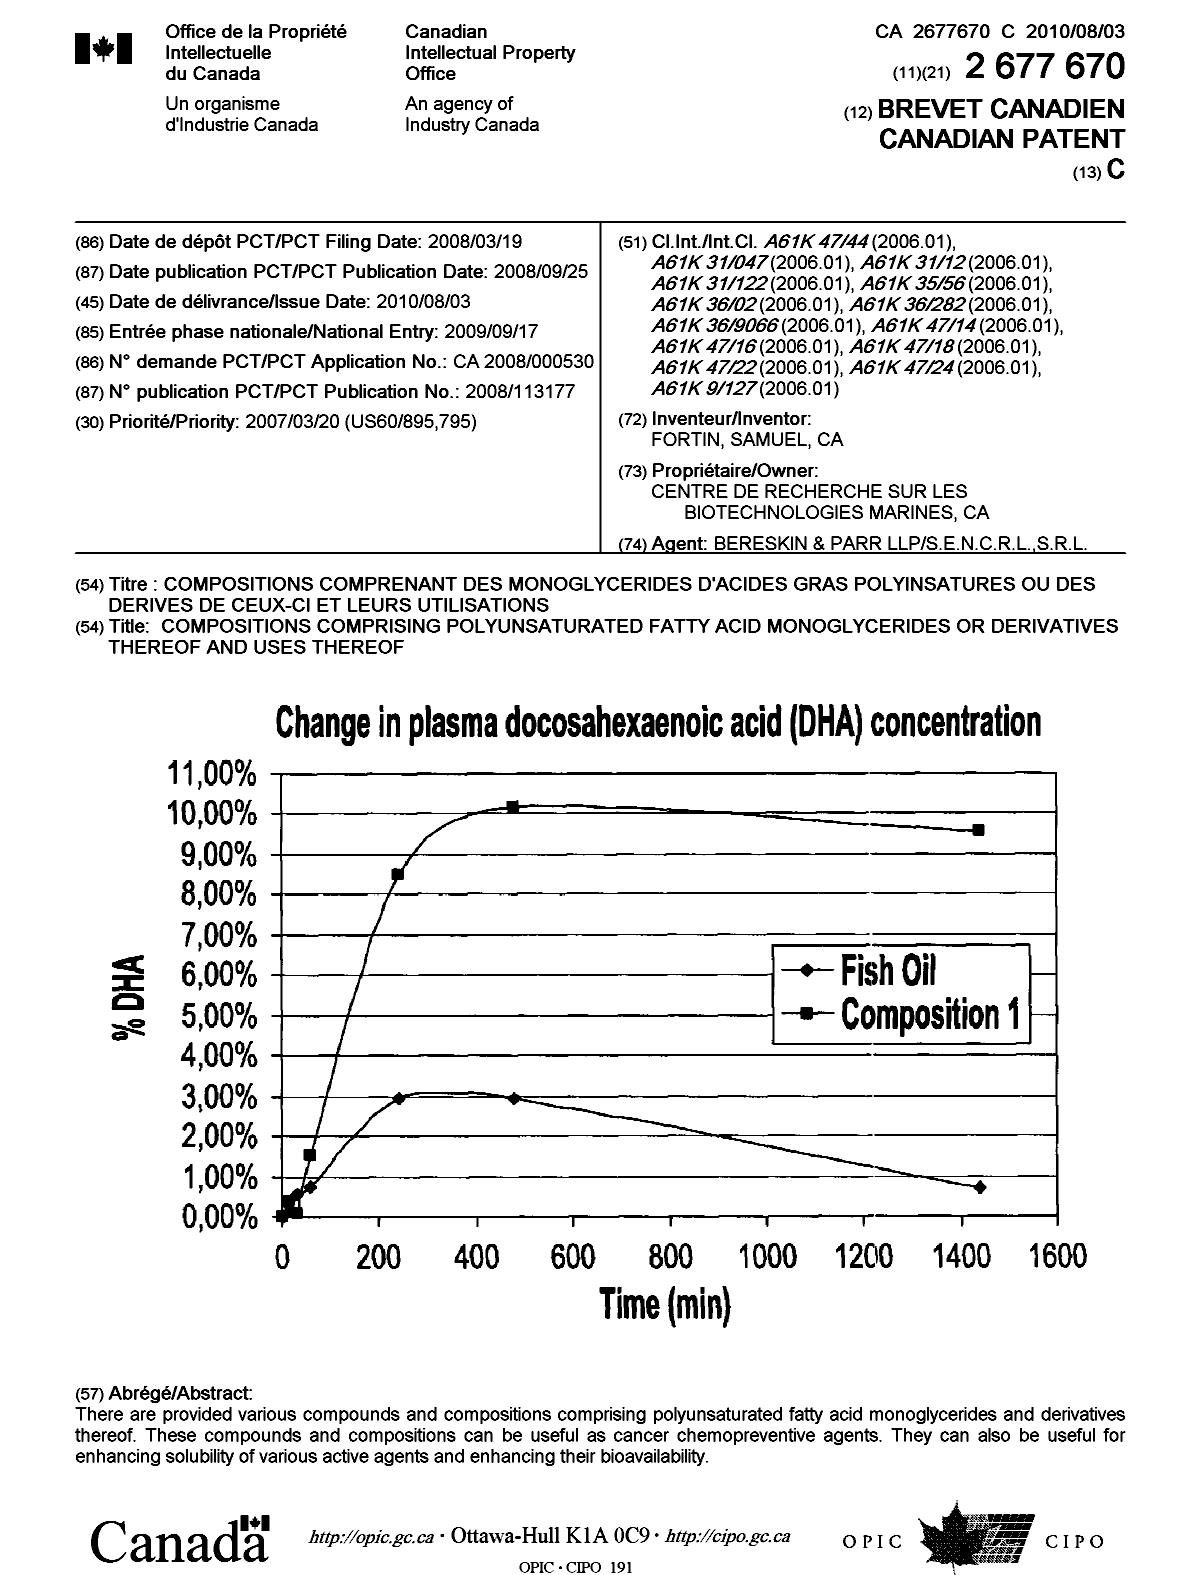 Document de brevet canadien 2677670. Page couverture 20100715. Image 1 de 1